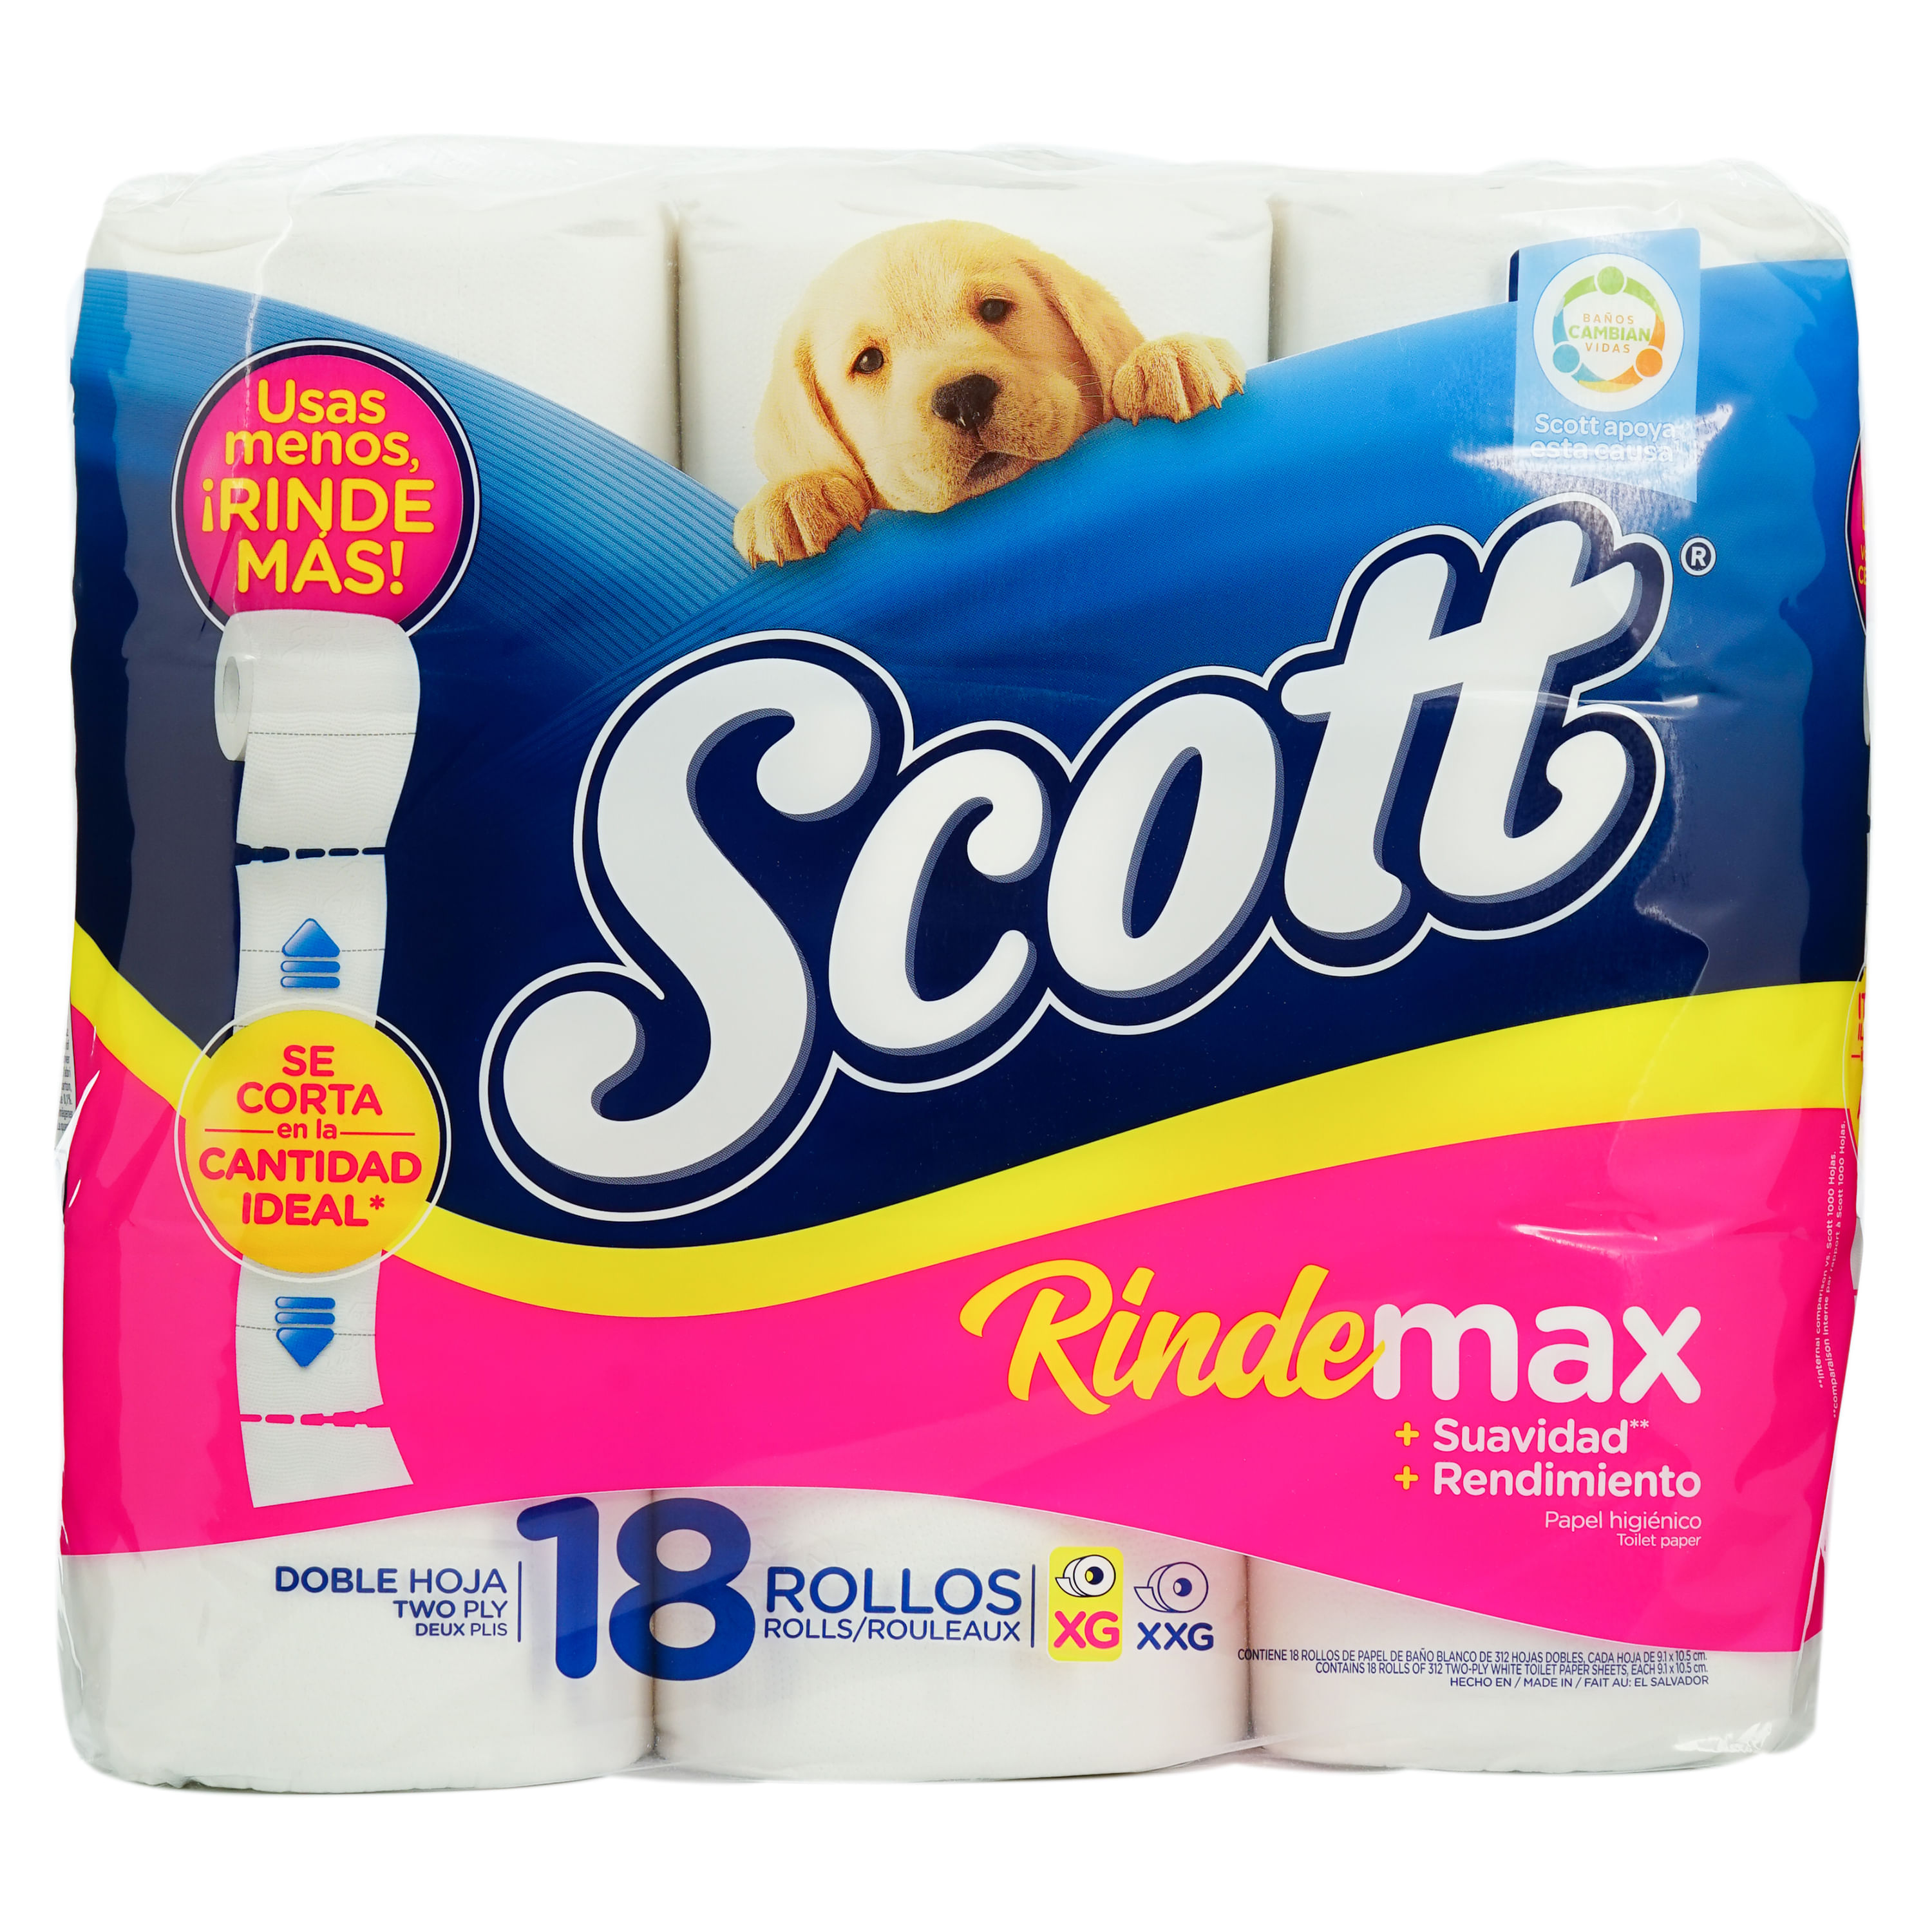 Papel higiénico scottex 16 rollos - Aripin Supermercado online